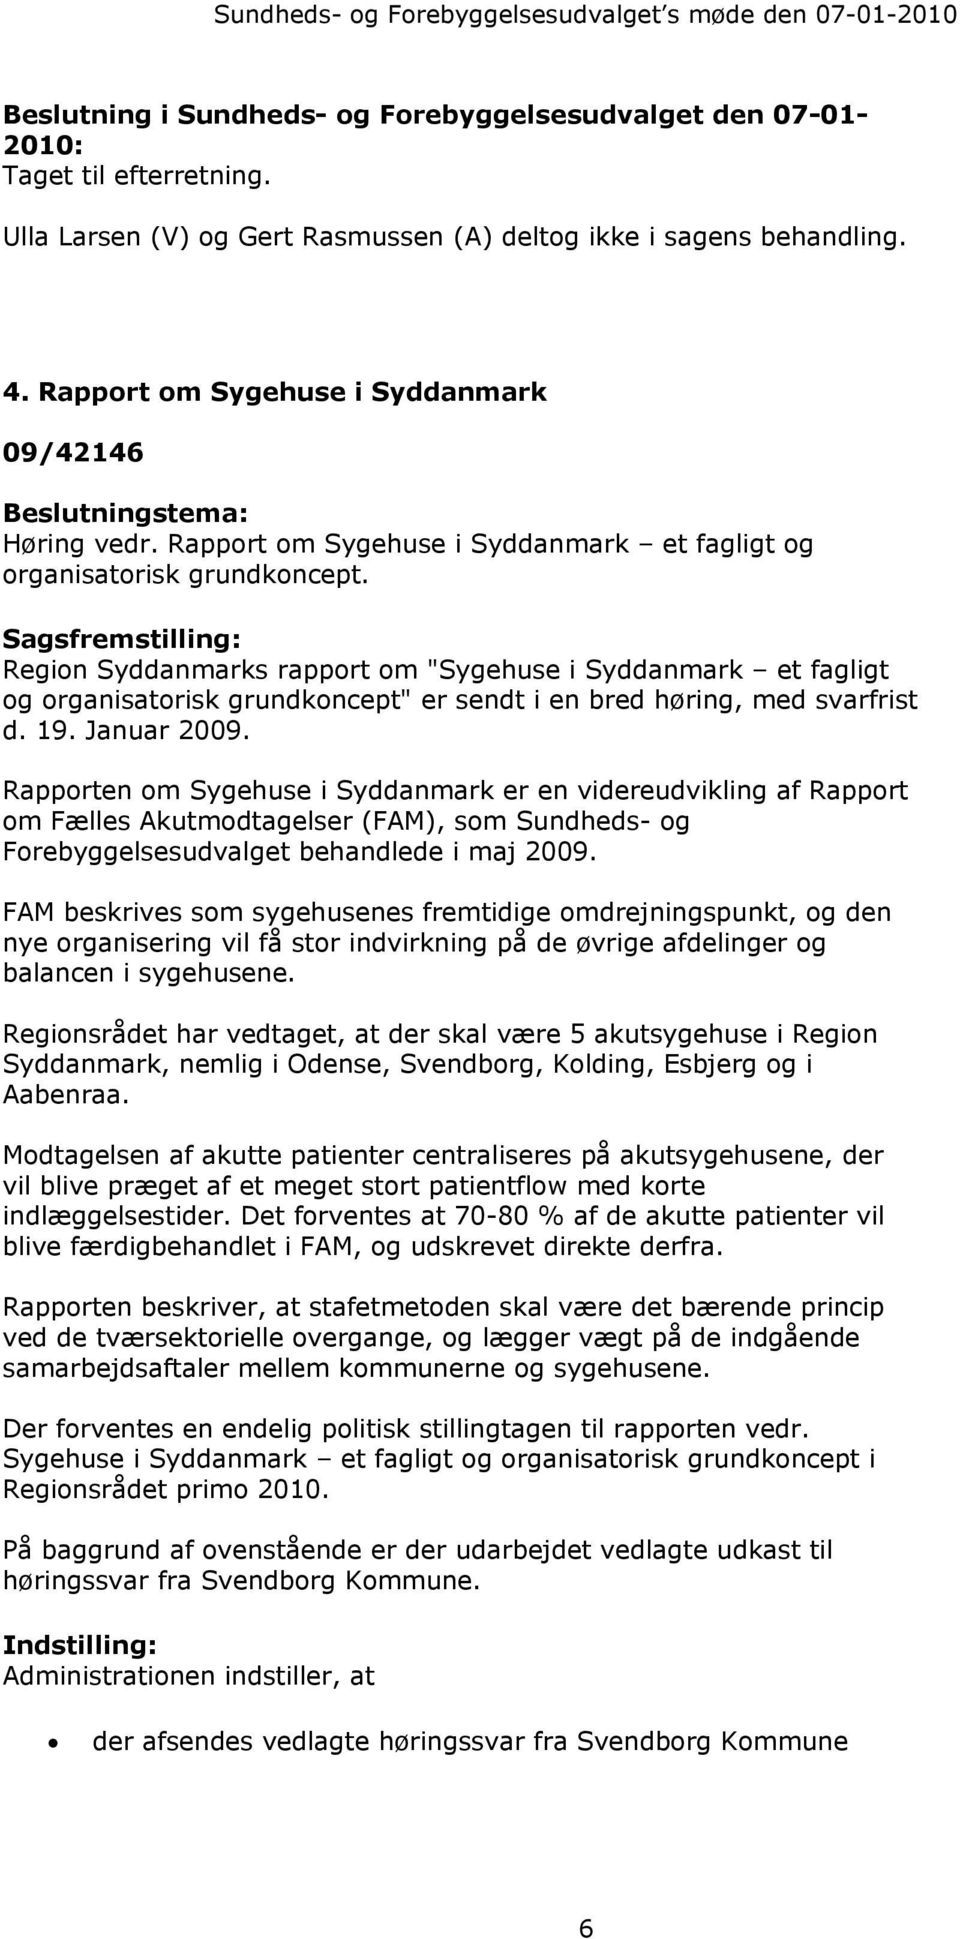 Rapporten om Sygehuse i Syddanmark er en videreudvikling af Rapport om Fælles Akutmodtagelser (FAM), som Sundheds- og Forebyggelsesudvalget behandlede i maj 2009.